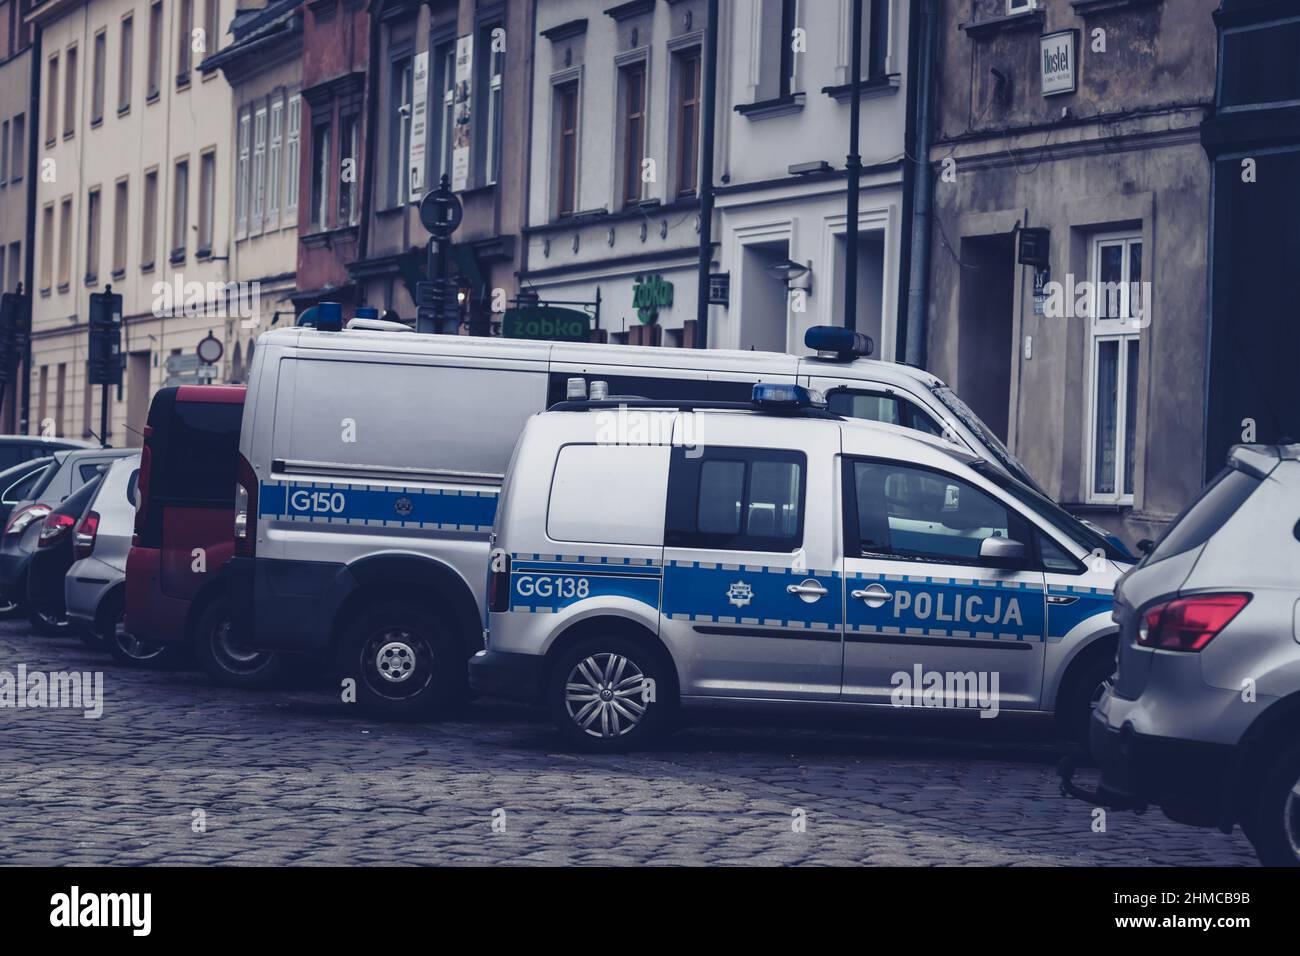 09-12-2021. cracovie-pologne. Voitures de police sur la rue principale de Kazmeiz Pologne avec la toile de fond de vieilles maisons Banque D'Images